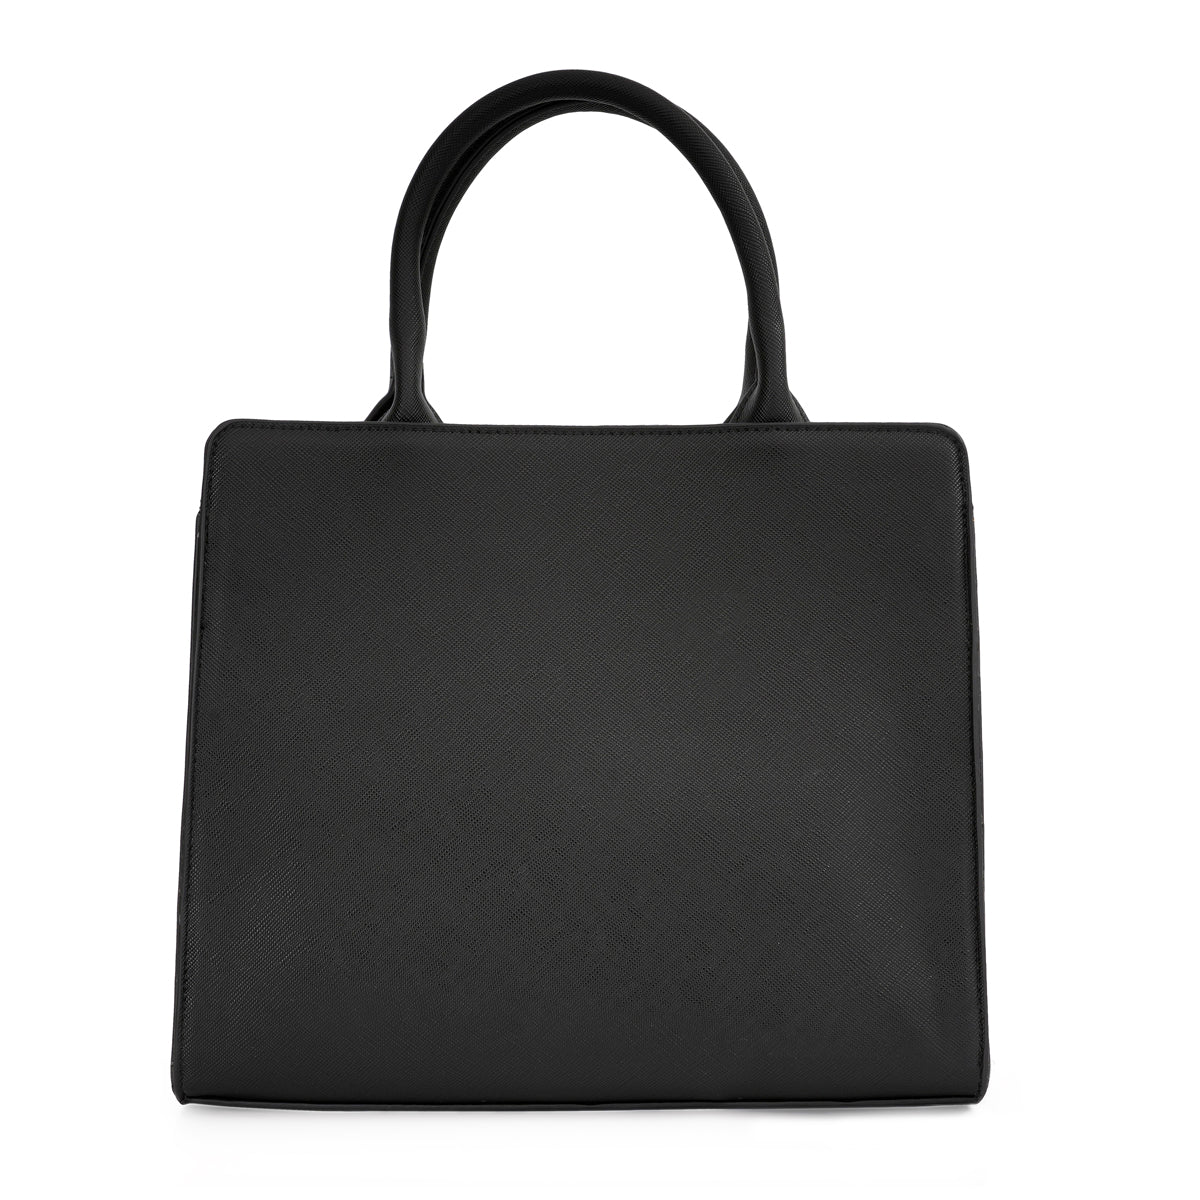 Aeropostale Macy Mid Tote Handbag Black